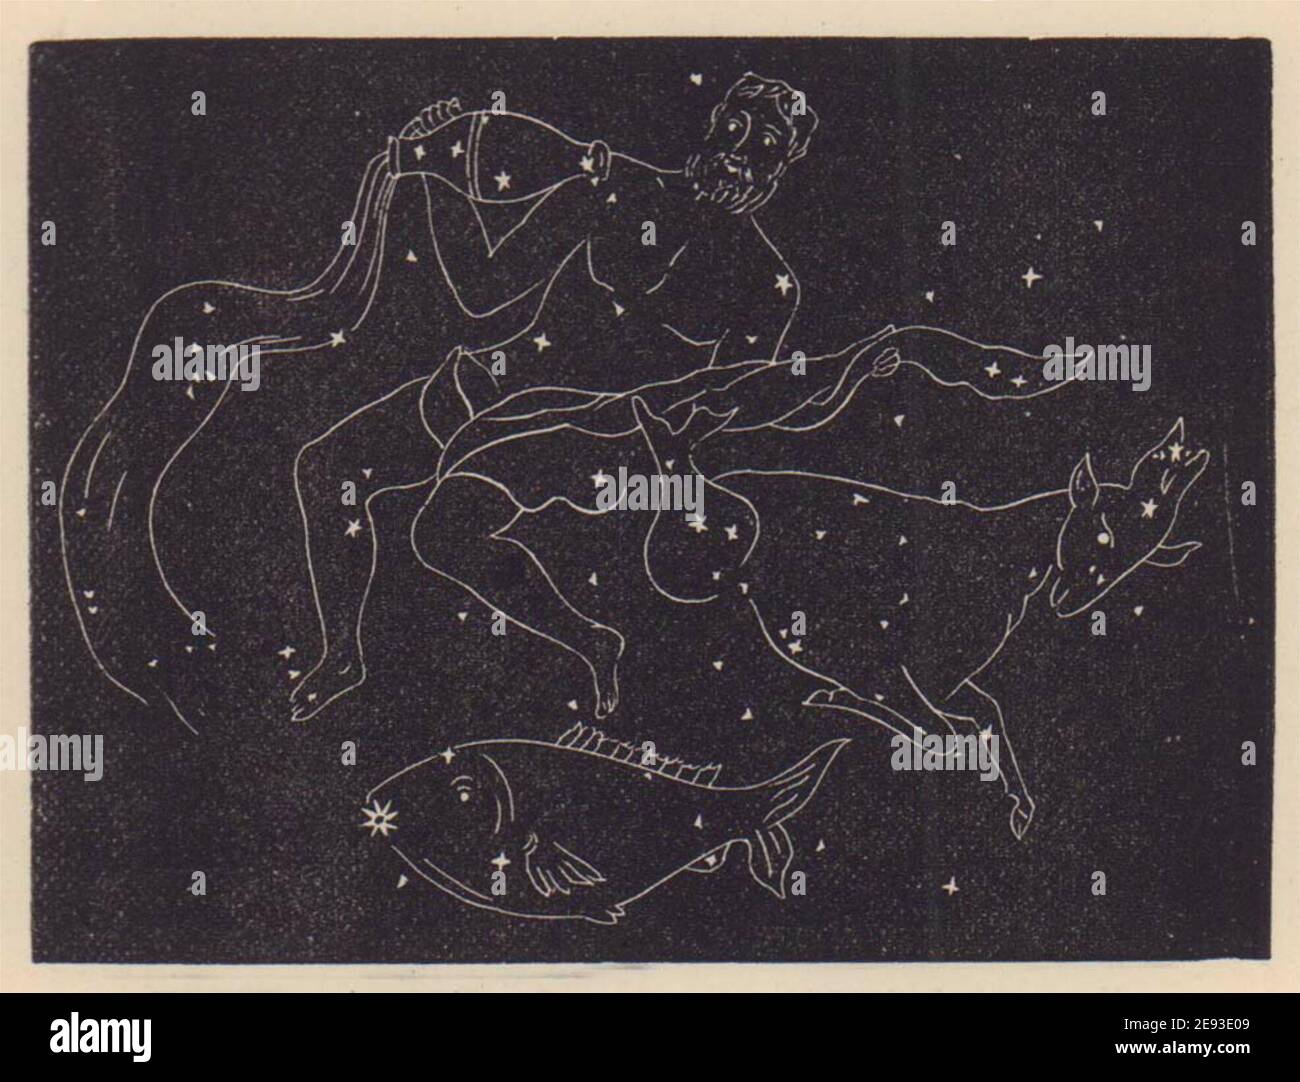 Aquarius, Capricornus, and Piscis Australis. Star chart. SMALL. PROCTOR 1881 Stock Photo